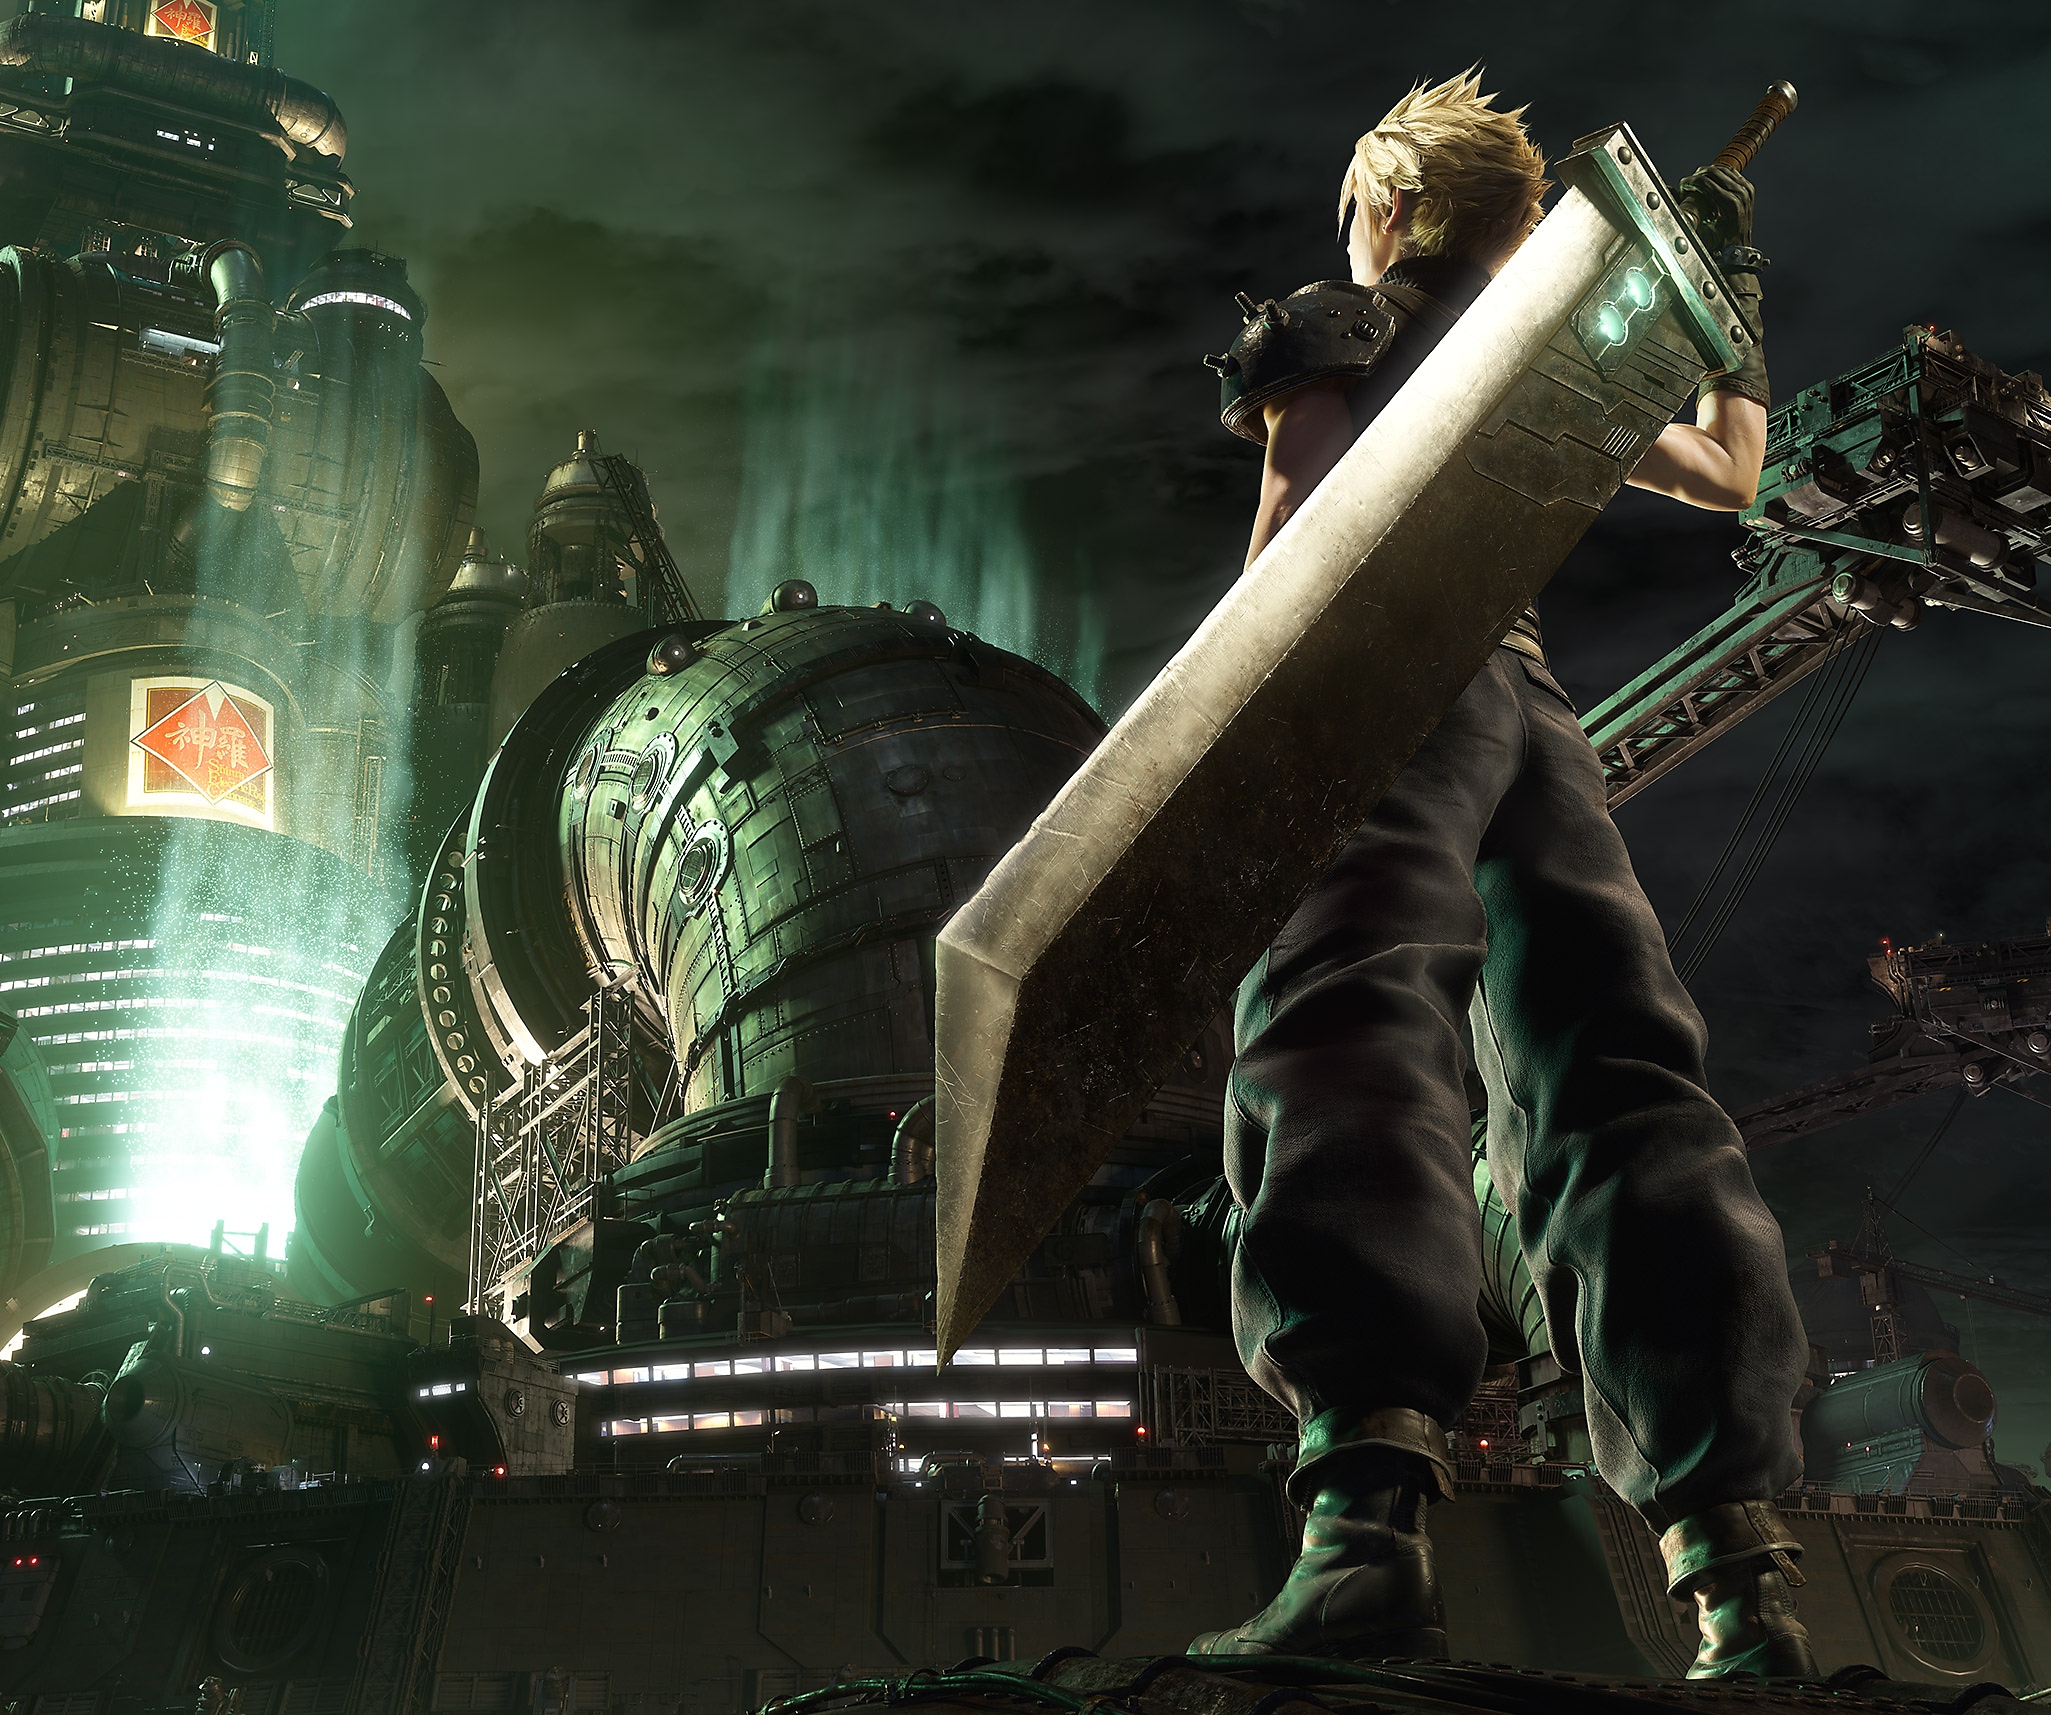 Arte guía de Final Fantasy VII Remake que presenta a Cloud, el protagonista, en pie frente al cuartel general de Shinra.